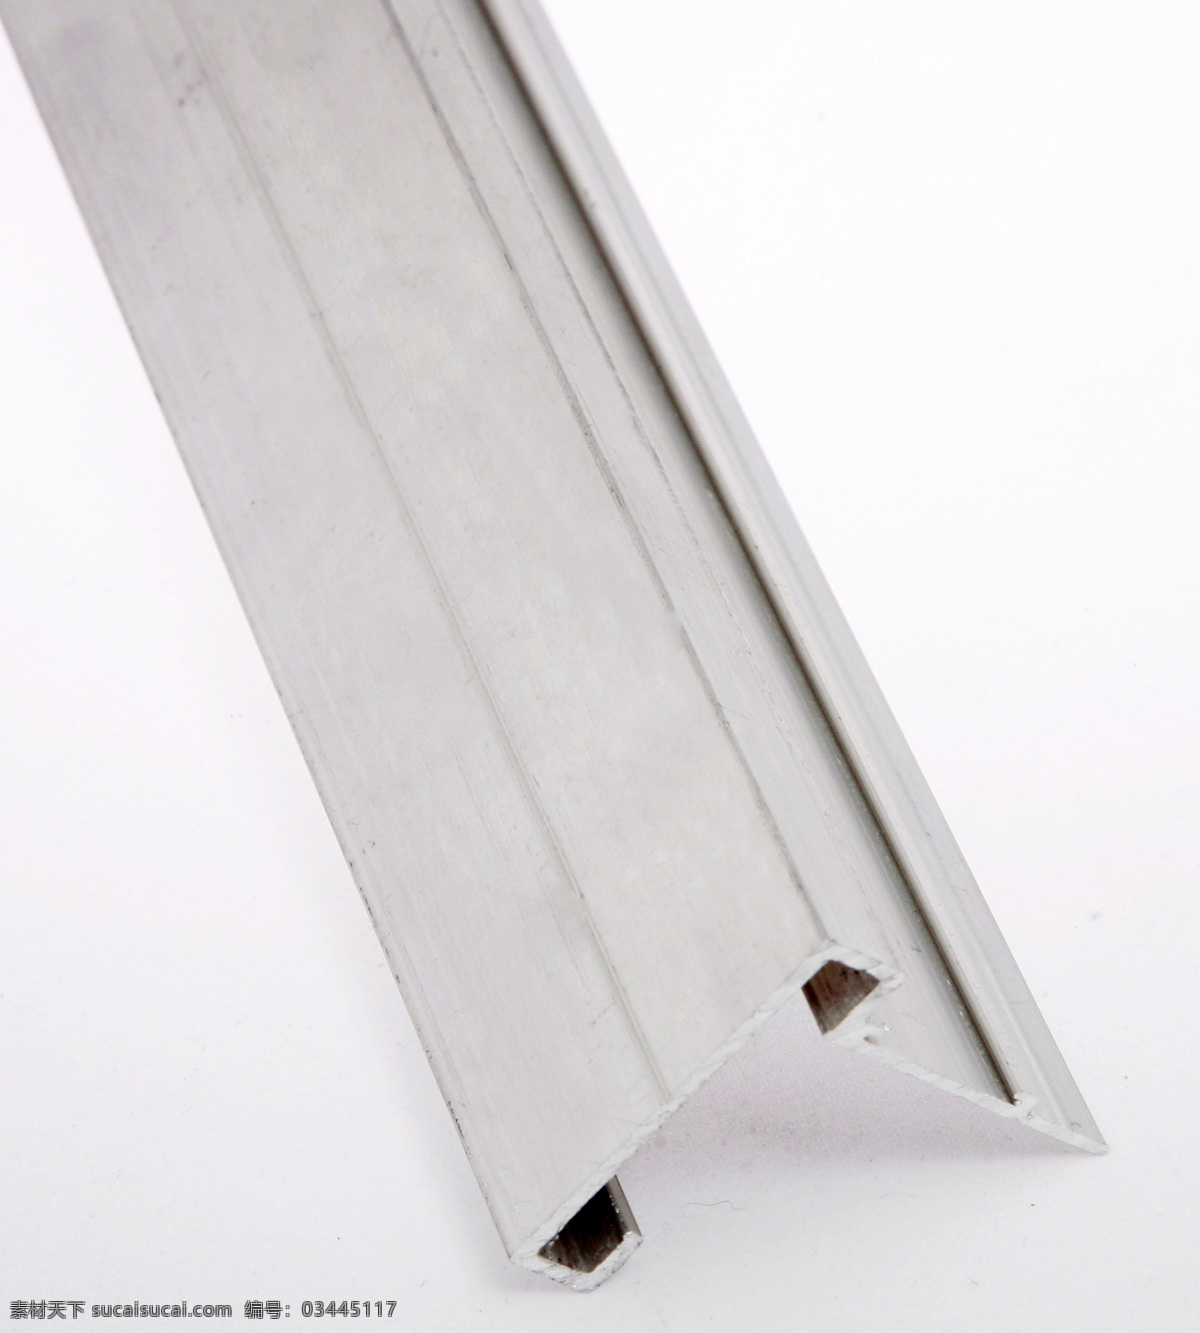 铝材 边框 画框材料 工业生产 现代科技